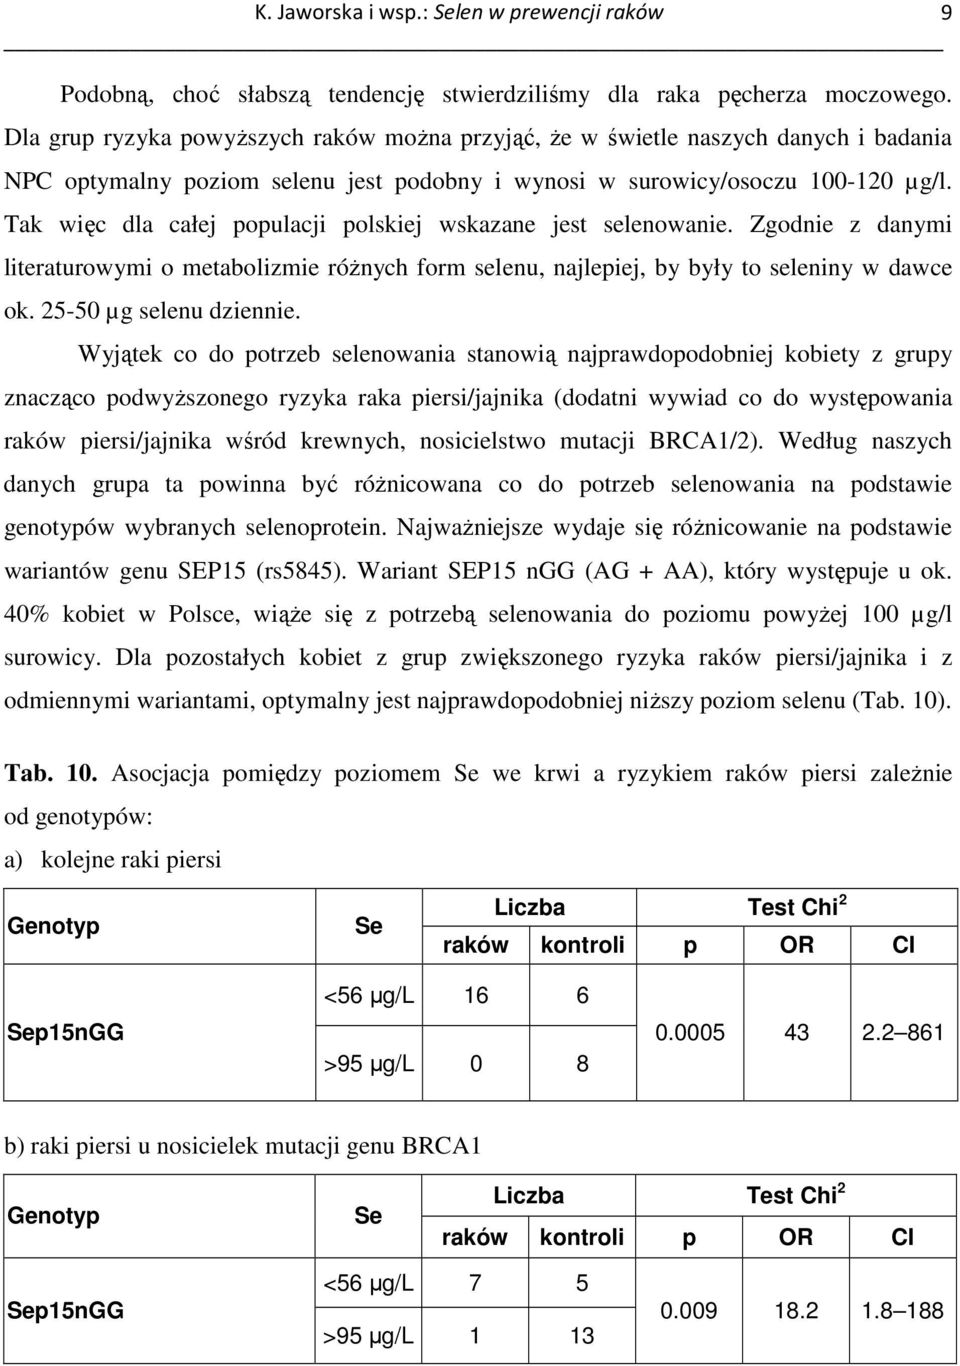 Tak więc dla całej populacji polskiej wskazane jest selenowanie. Zgodnie z danymi literaturowymi o metabolizmie róŝnych form selenu, najlepiej, by były to seleniny w dawce ok.